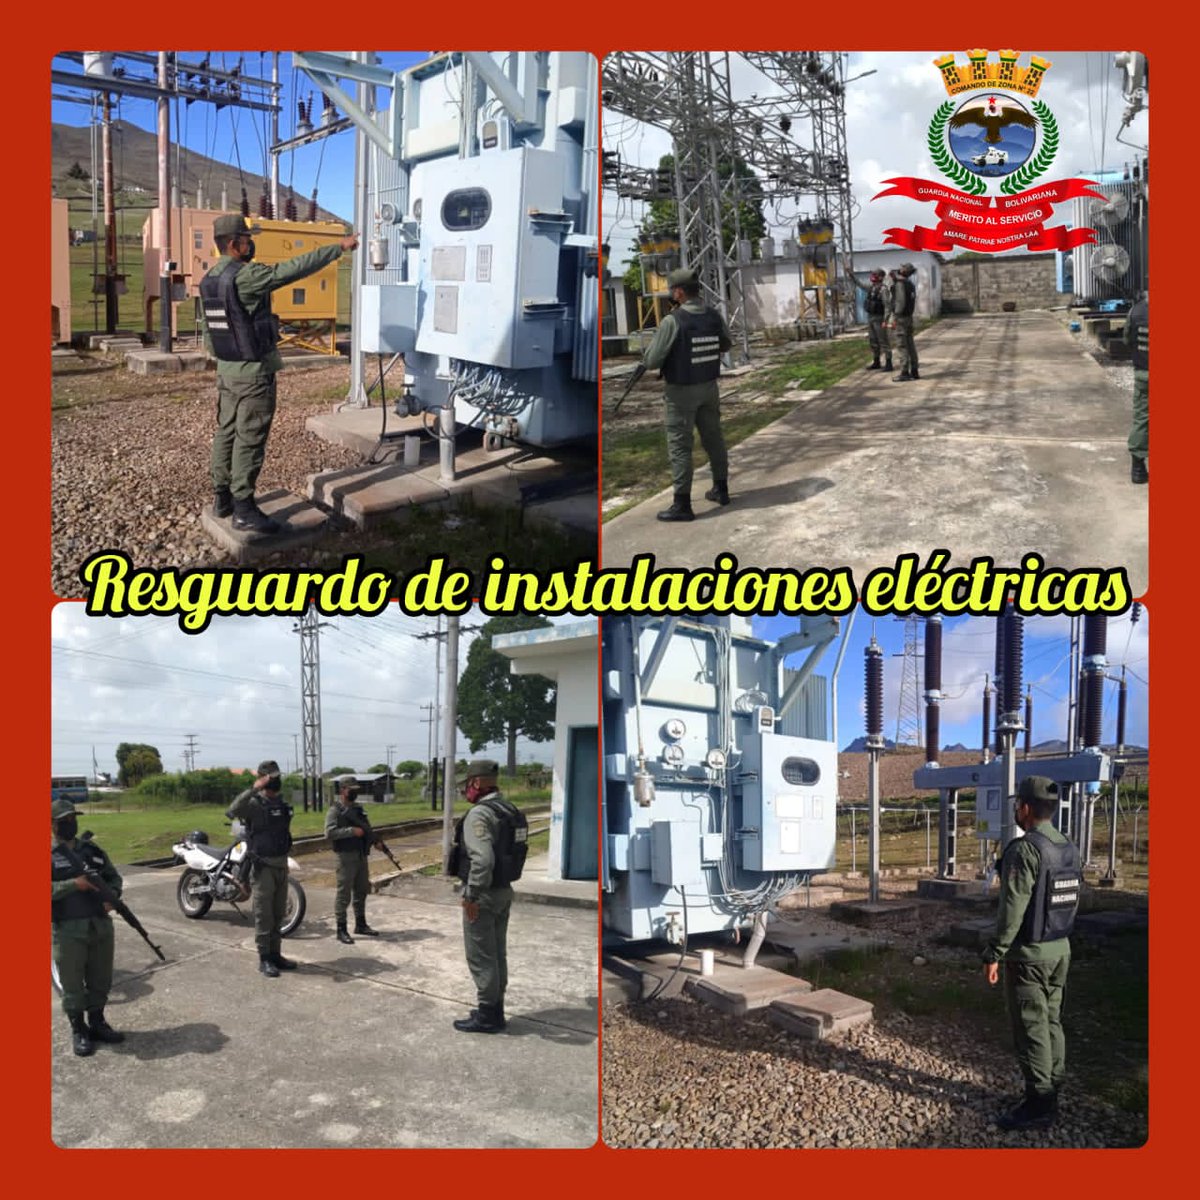 Nuestros Efectivos del @221Destacamento resguardan las subestacionez eléctricas del estado Mérida .
 #24May #Pichincha200Años
#PueblosSoberanos
.@GnbGaranteDePaz
.@Redi_andes
#FANB
#GNB